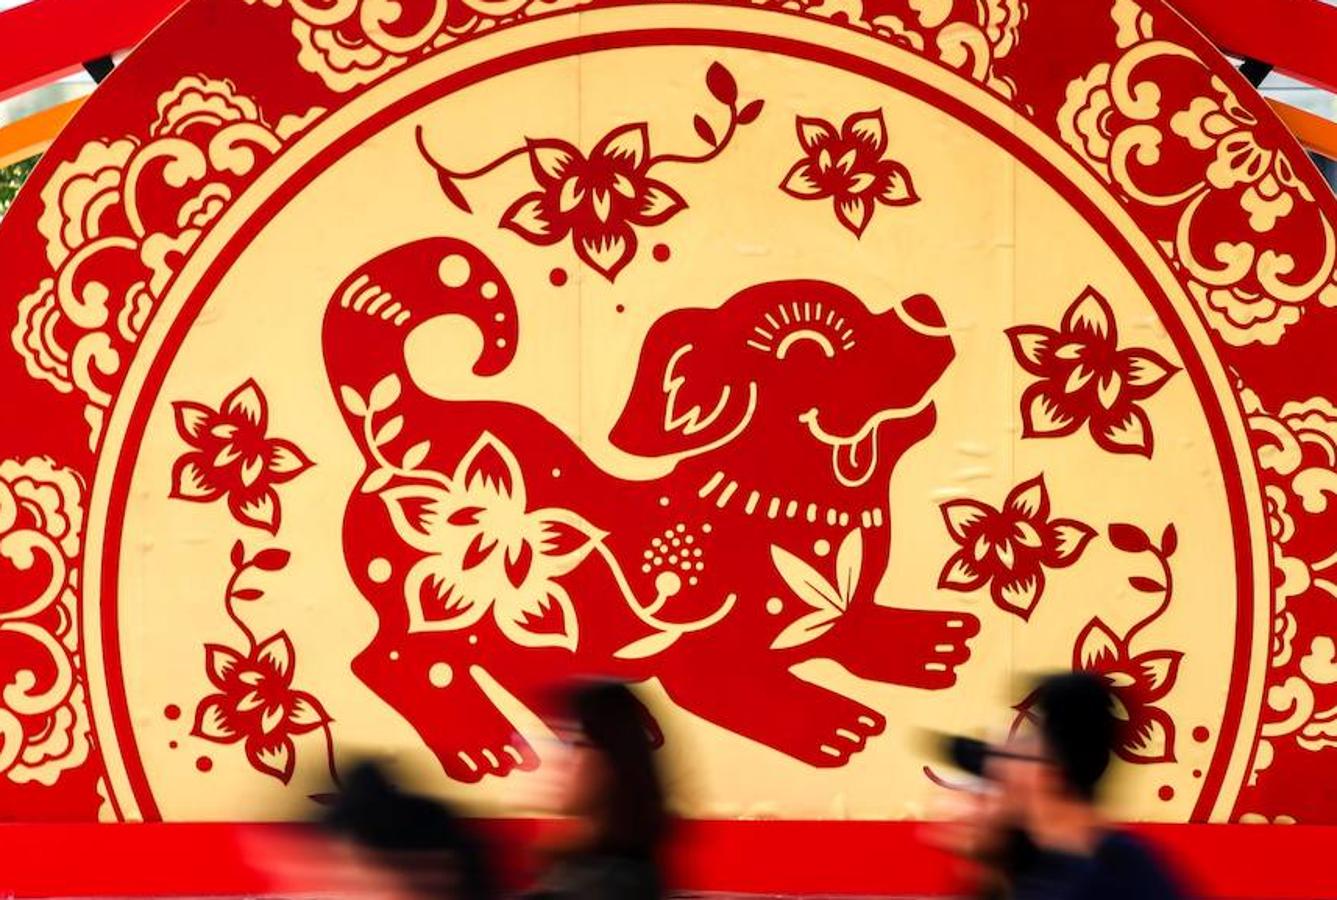 El Año Nuevo Chino es la fiesta tradicional más importante del país asiático y se celebra cada 16 de febrero. Tradición, color y fuegos artificiales protagonizan una de las celebraciones más multitudinarias del mundo. La comunidad china en la actualidad concentra la quinta parte de la población mundial. 